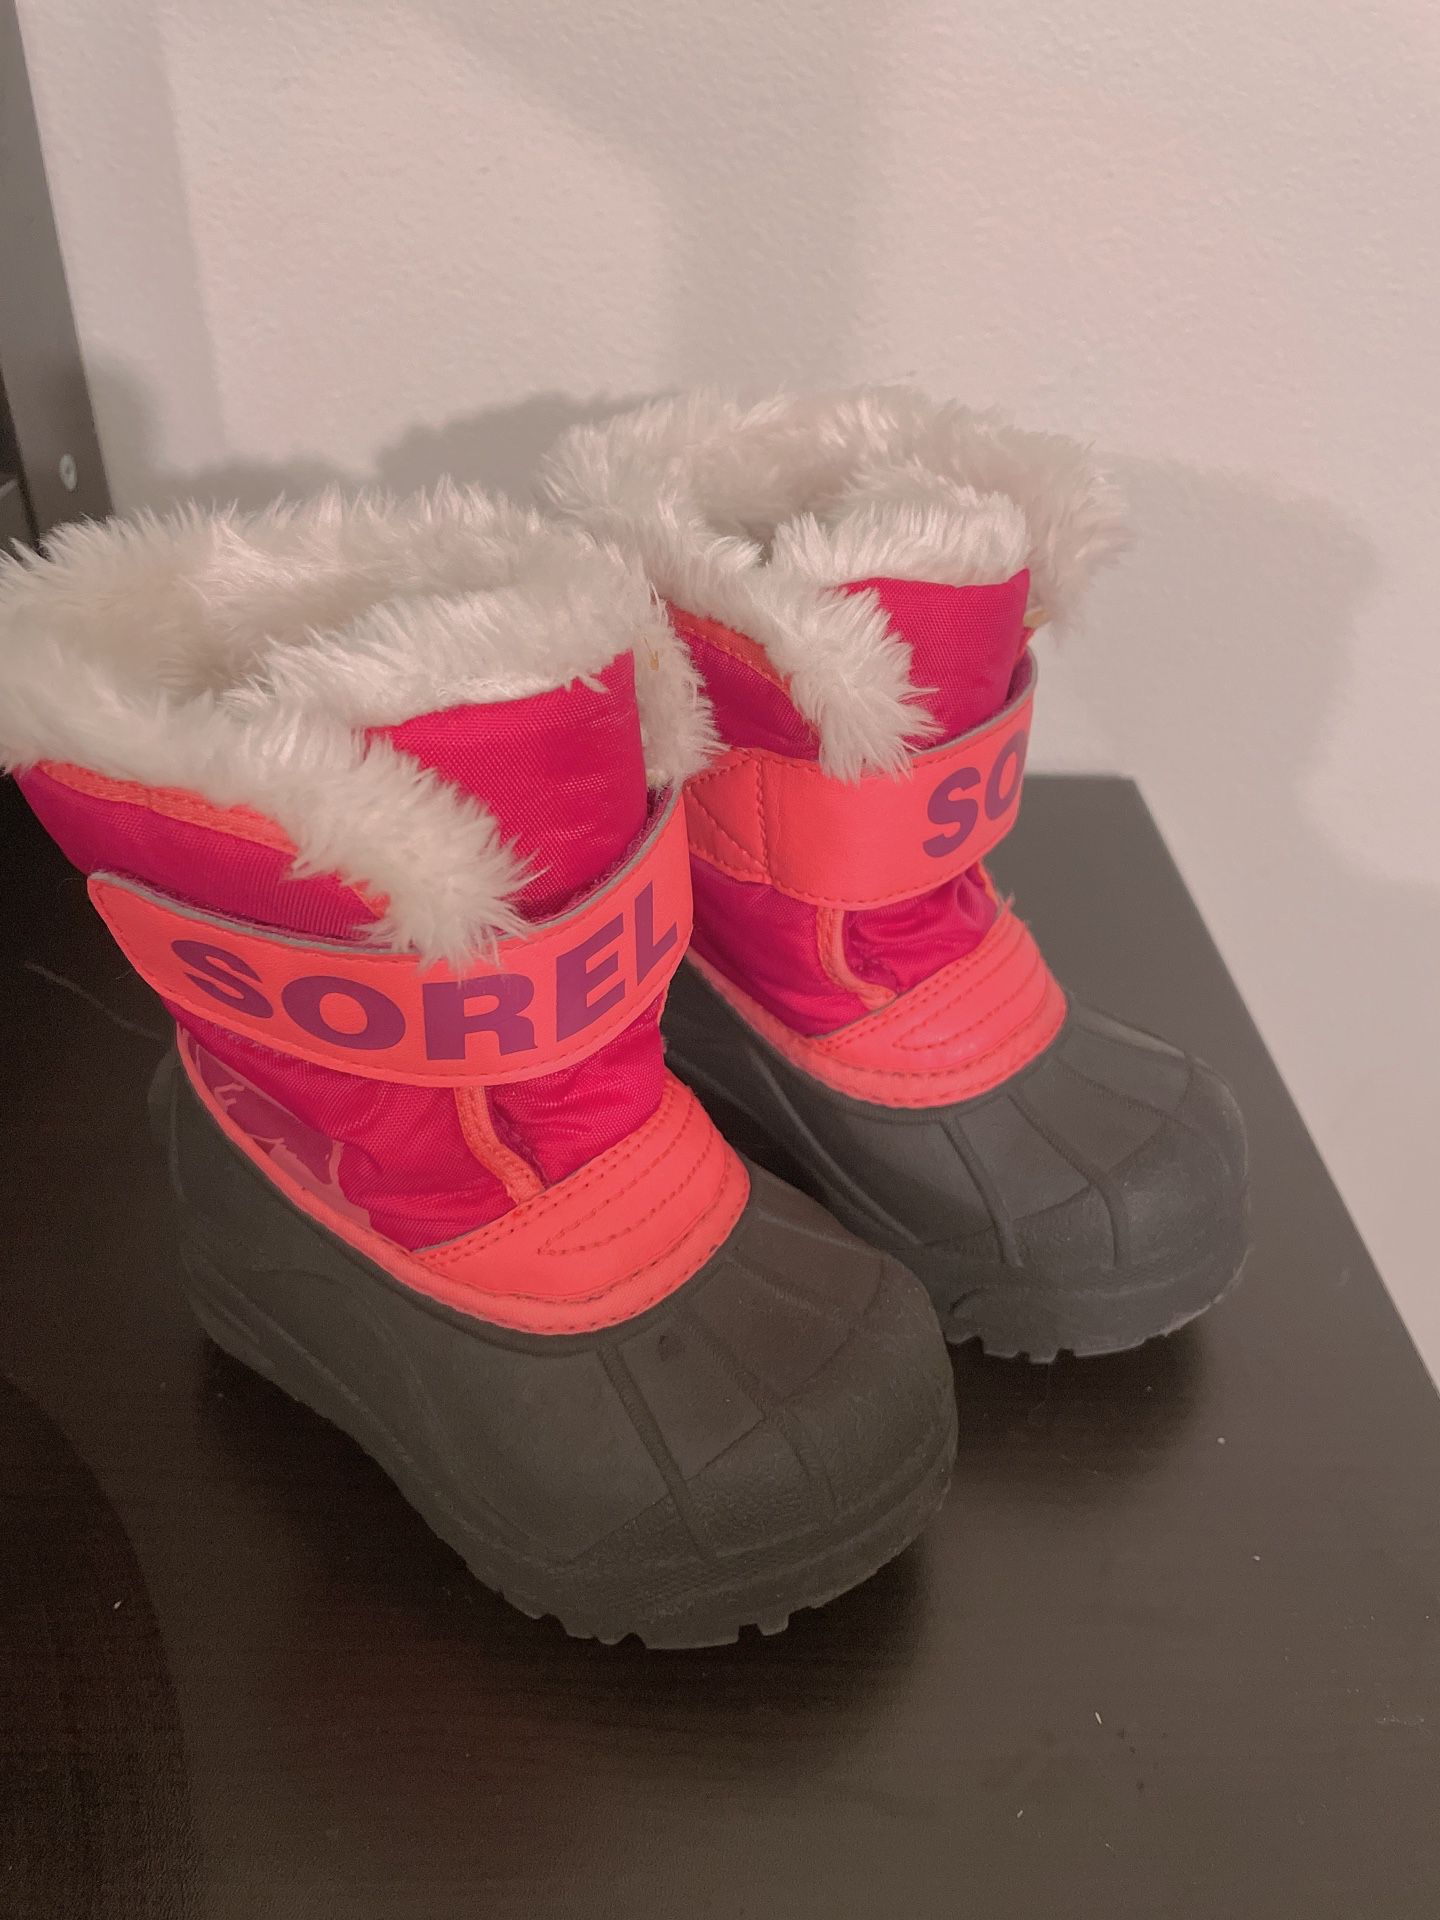 Toddler Snow Boots (sorel) 